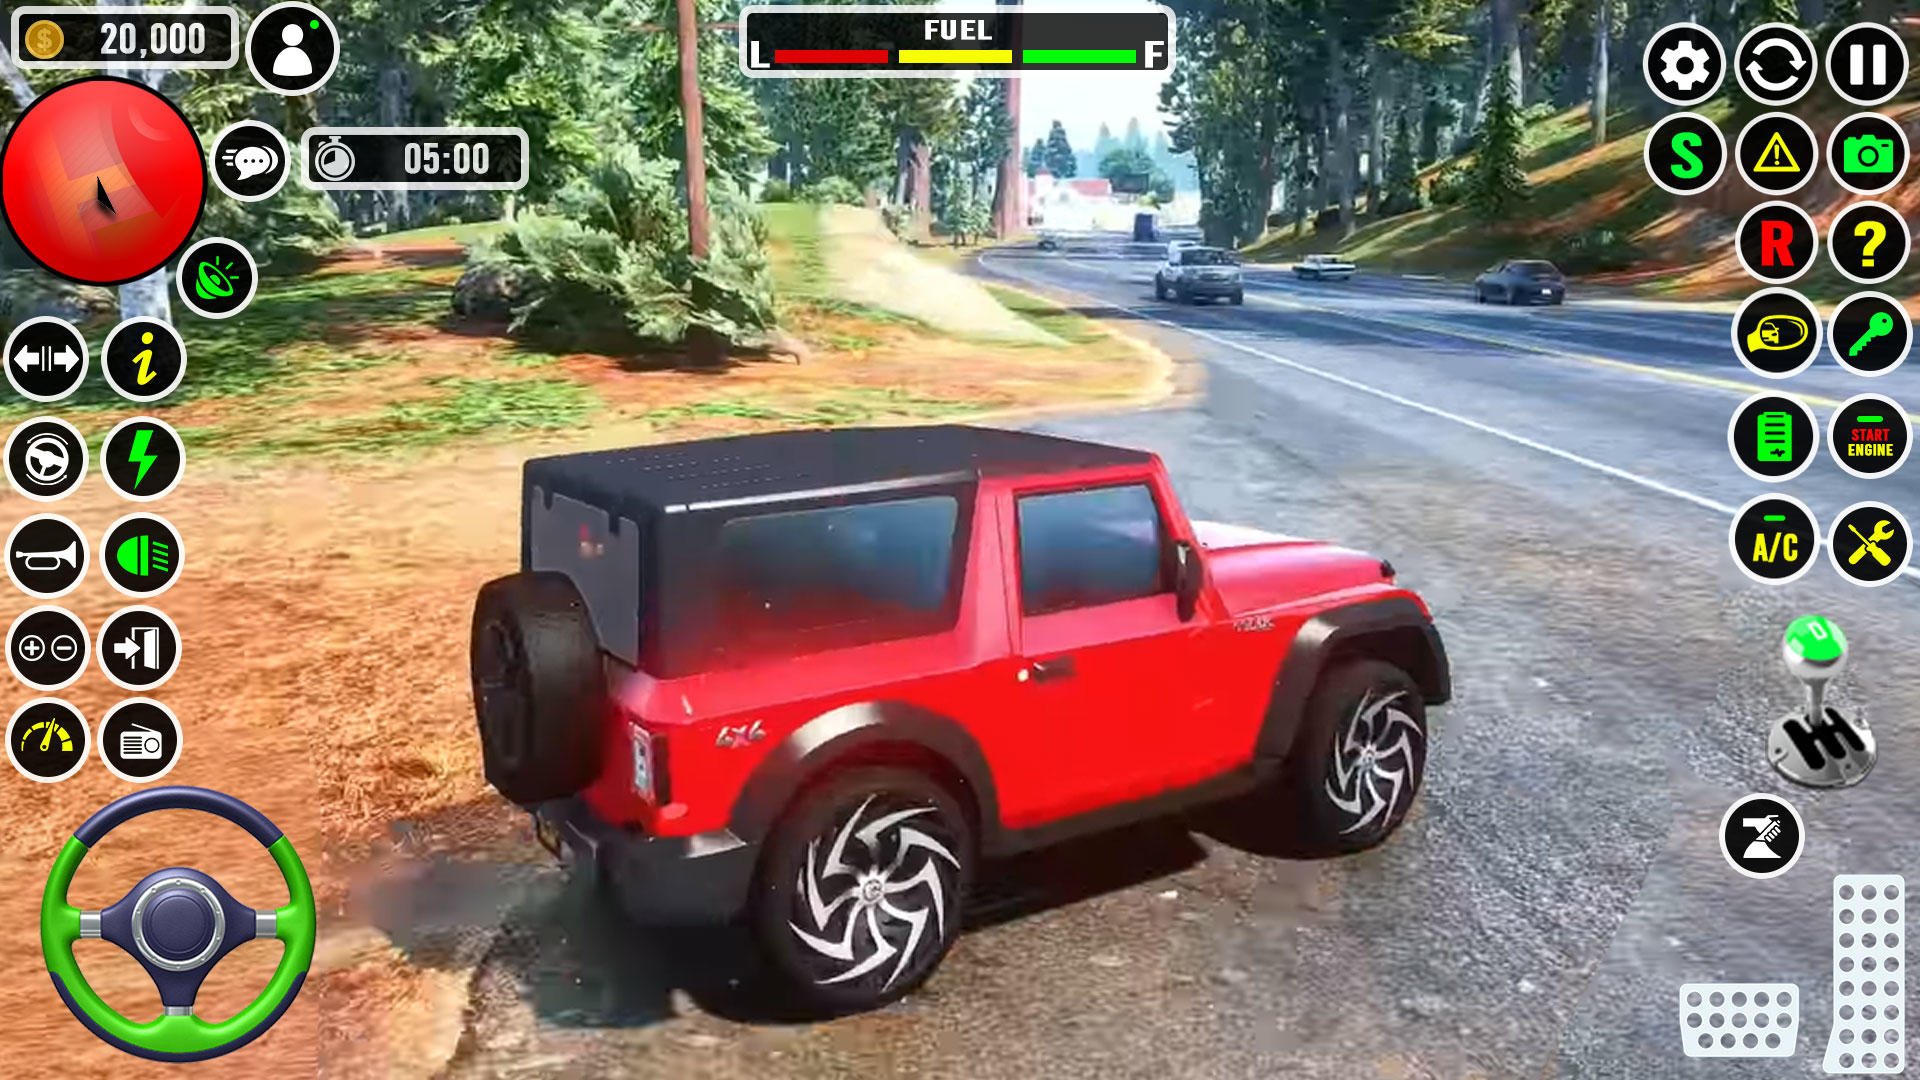 Screenshot 1 of Trò chơi xe Jeep 4x4 địa hình 0.1